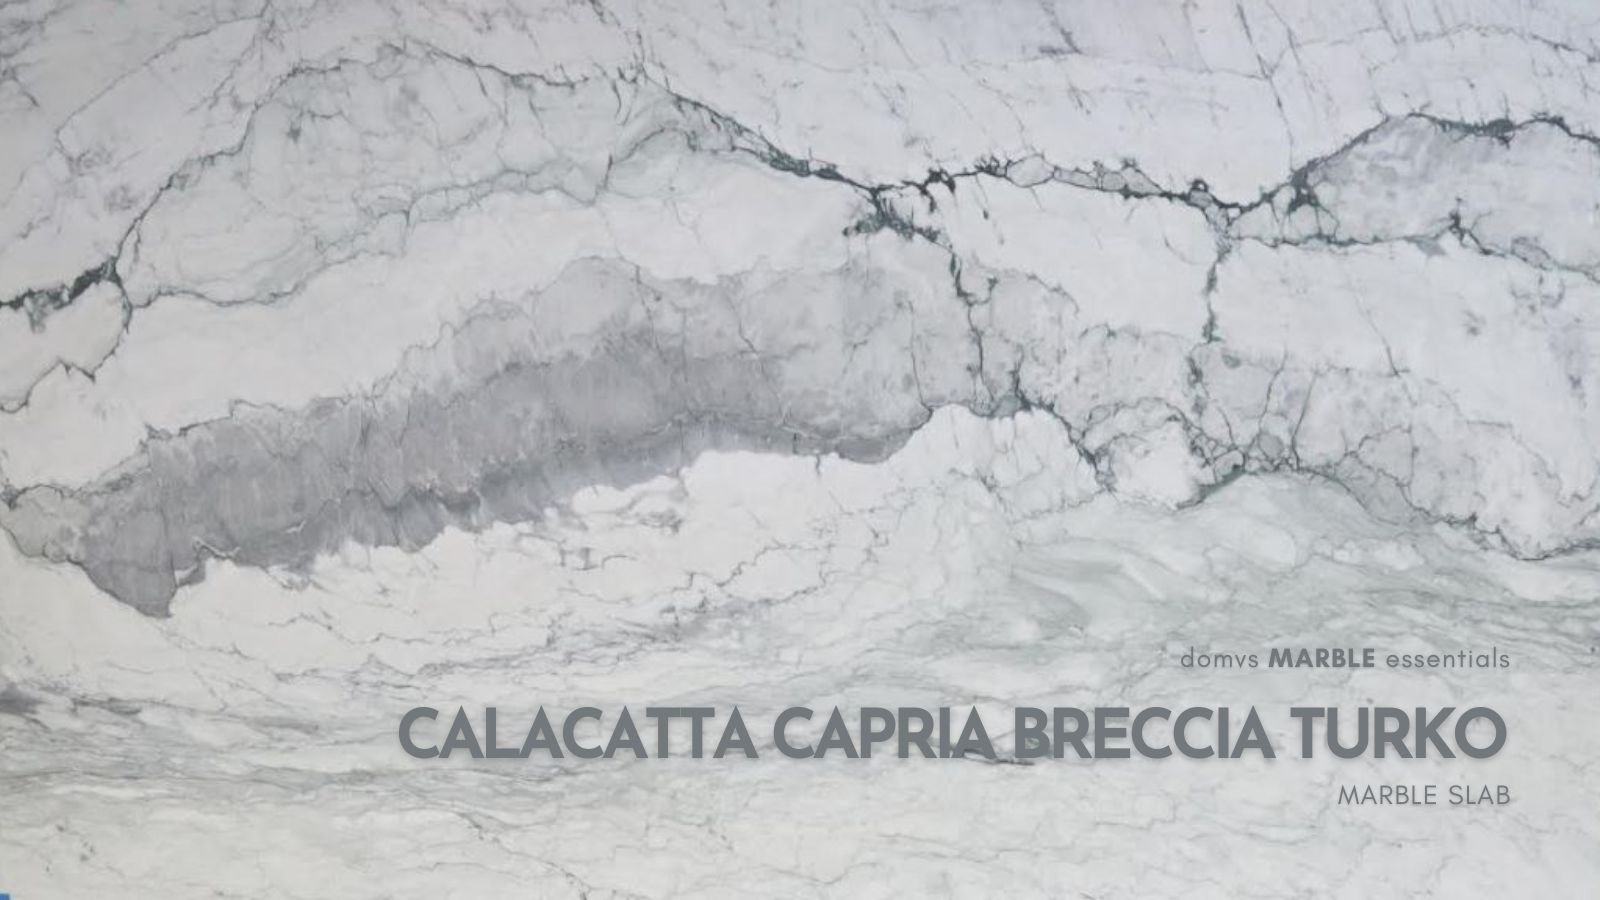 Calacatta Capria Breccia Turko Marble Slab